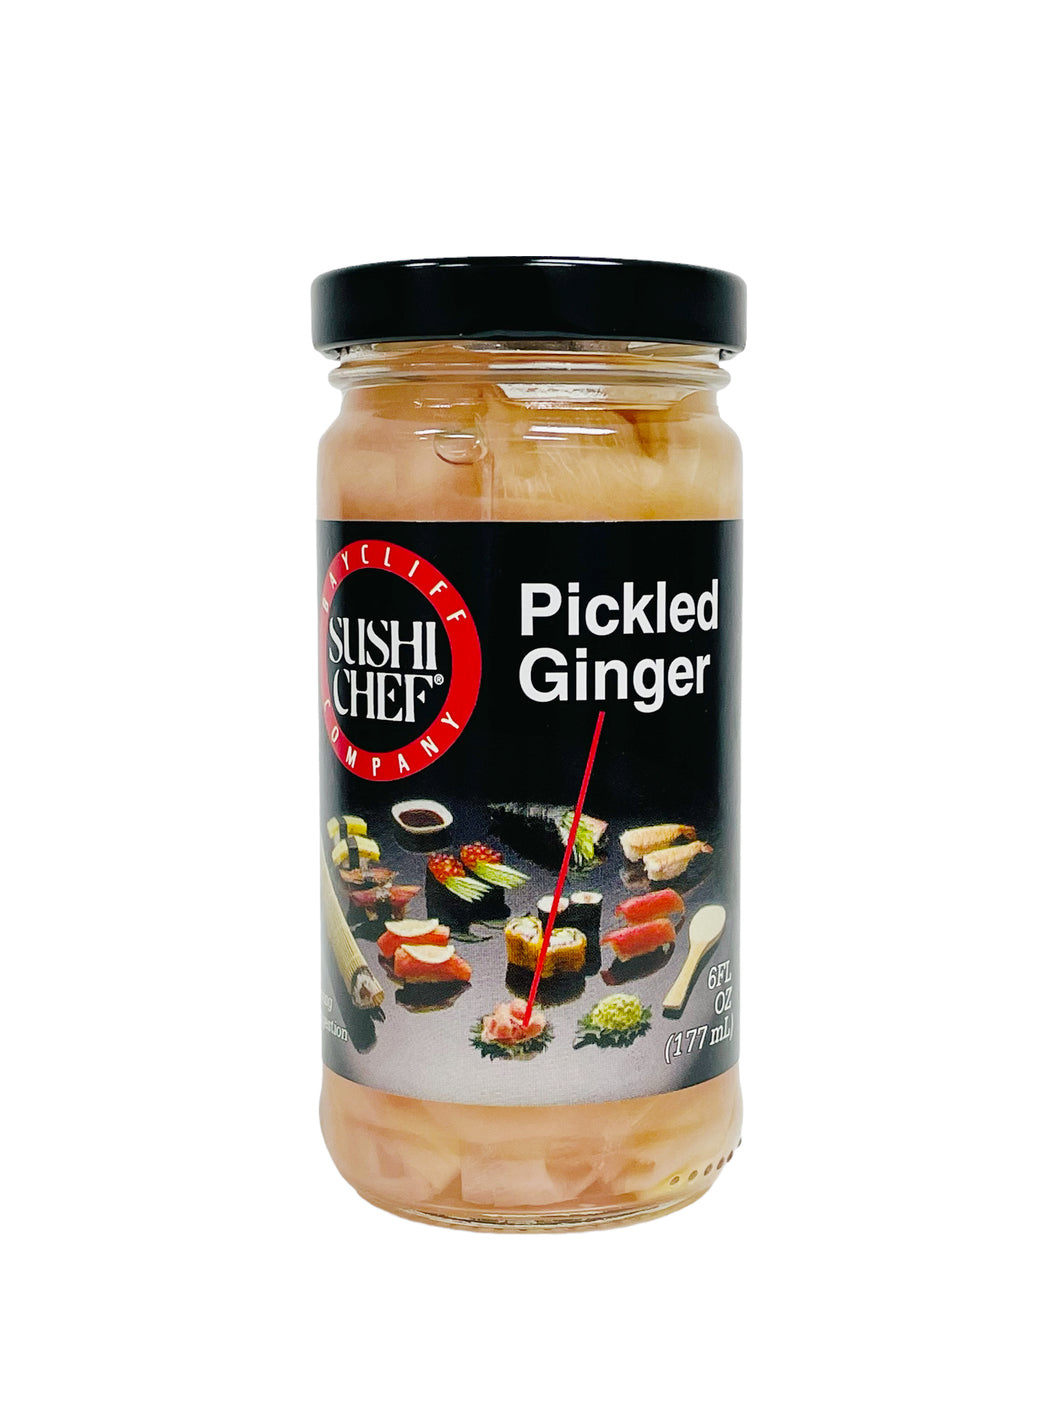 Sushi Chef Pickled Ginger 6oz 腌姜片